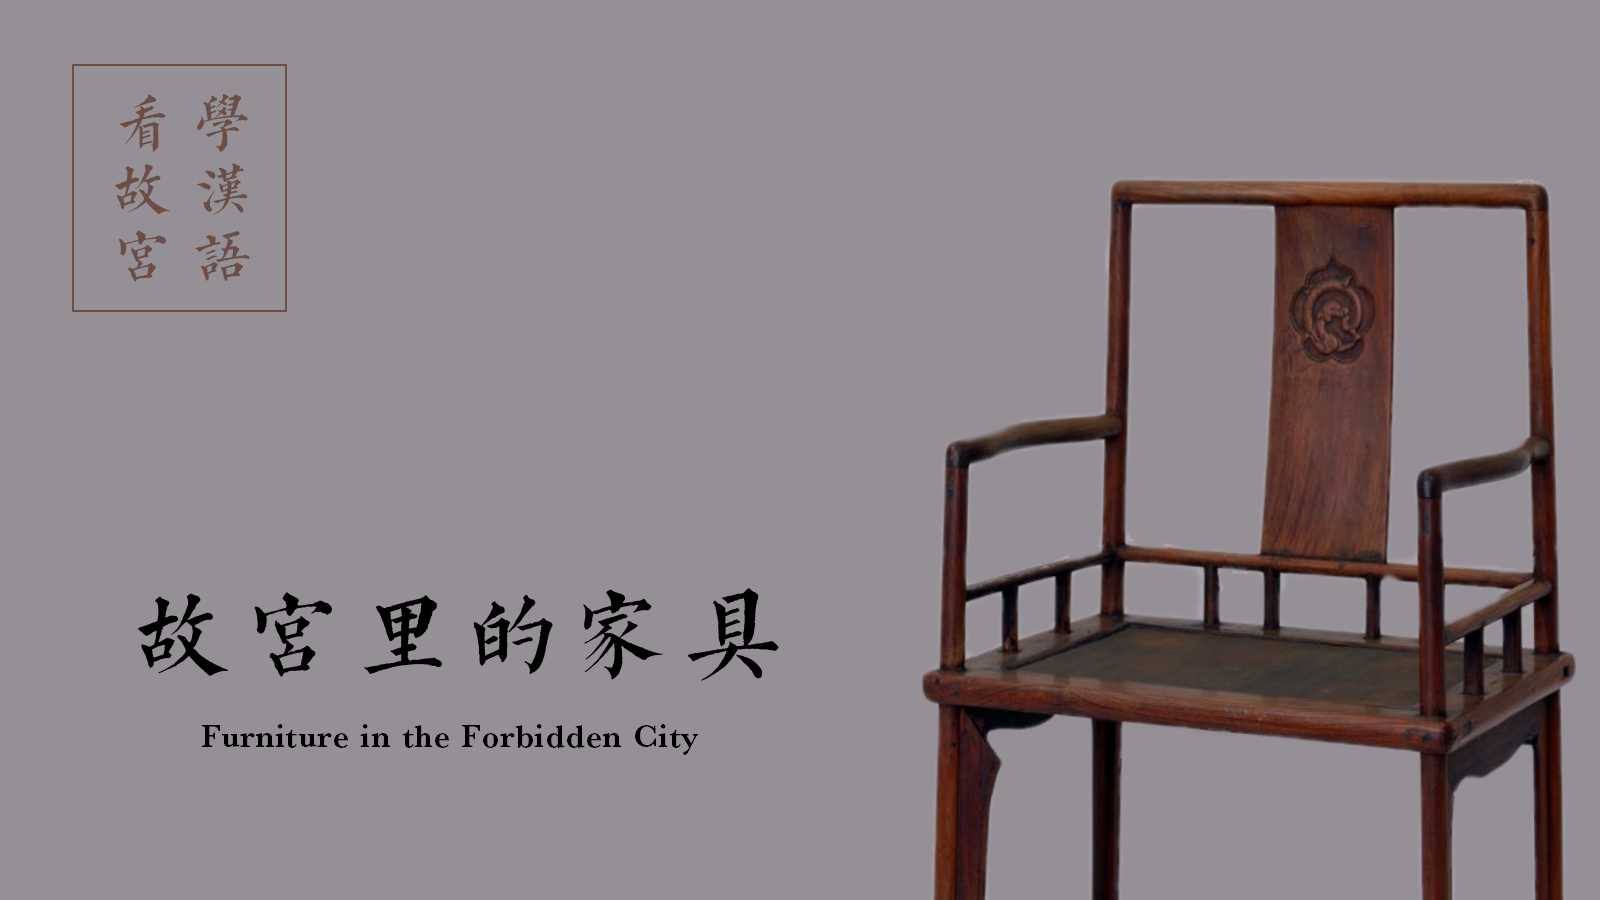 Treasures in the Forbidden City [Episode 7] Furniture in the Forbidden City